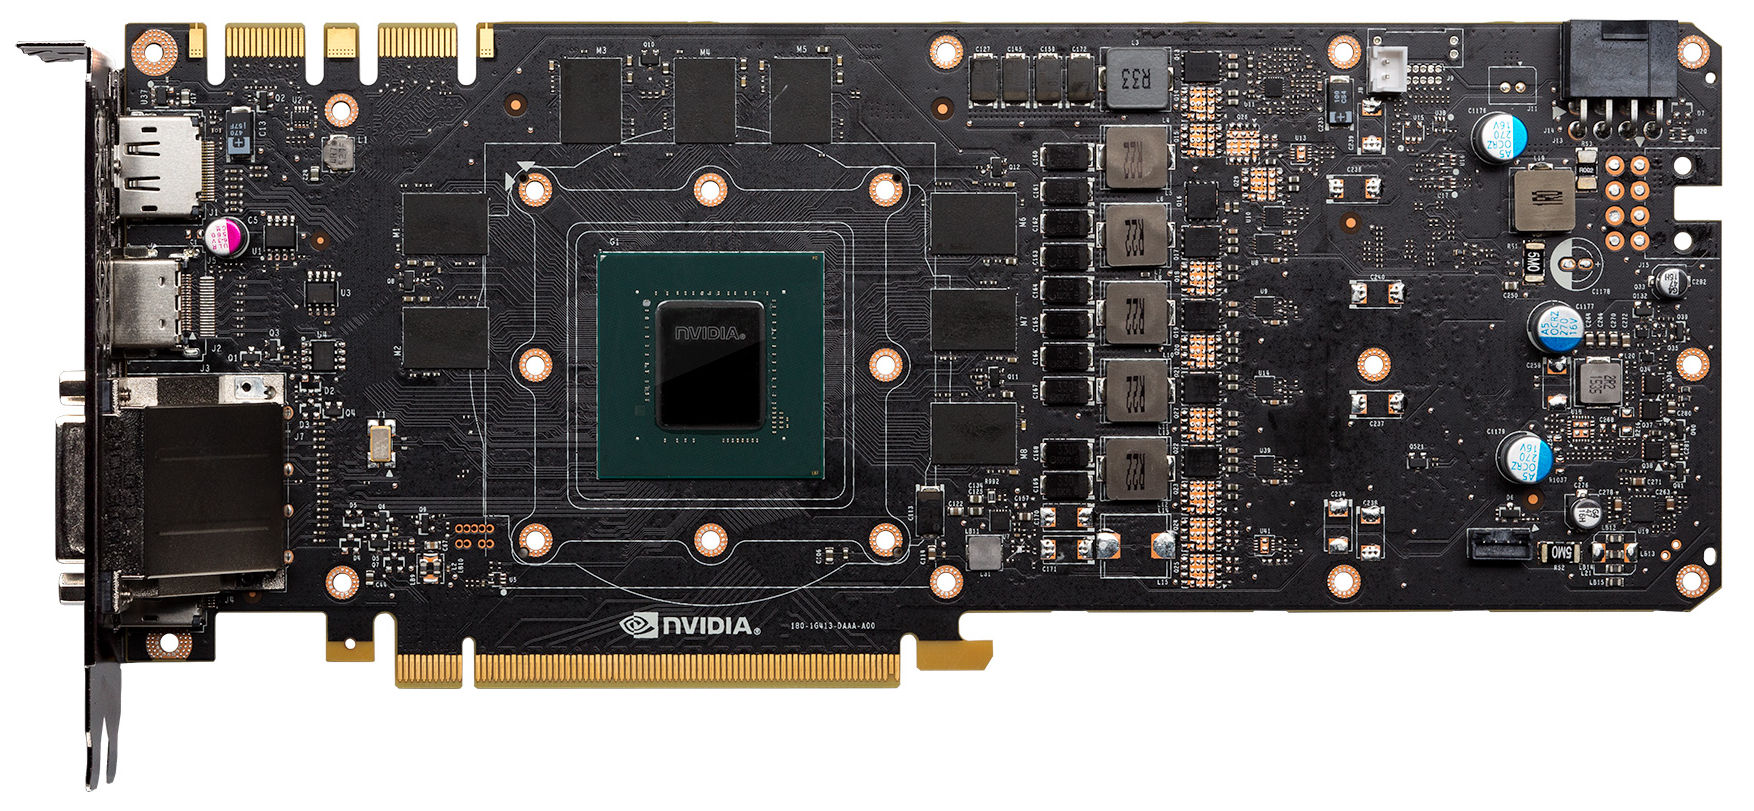 NVIDIA-GeForce-GTX-1080-PCB-1.jpg